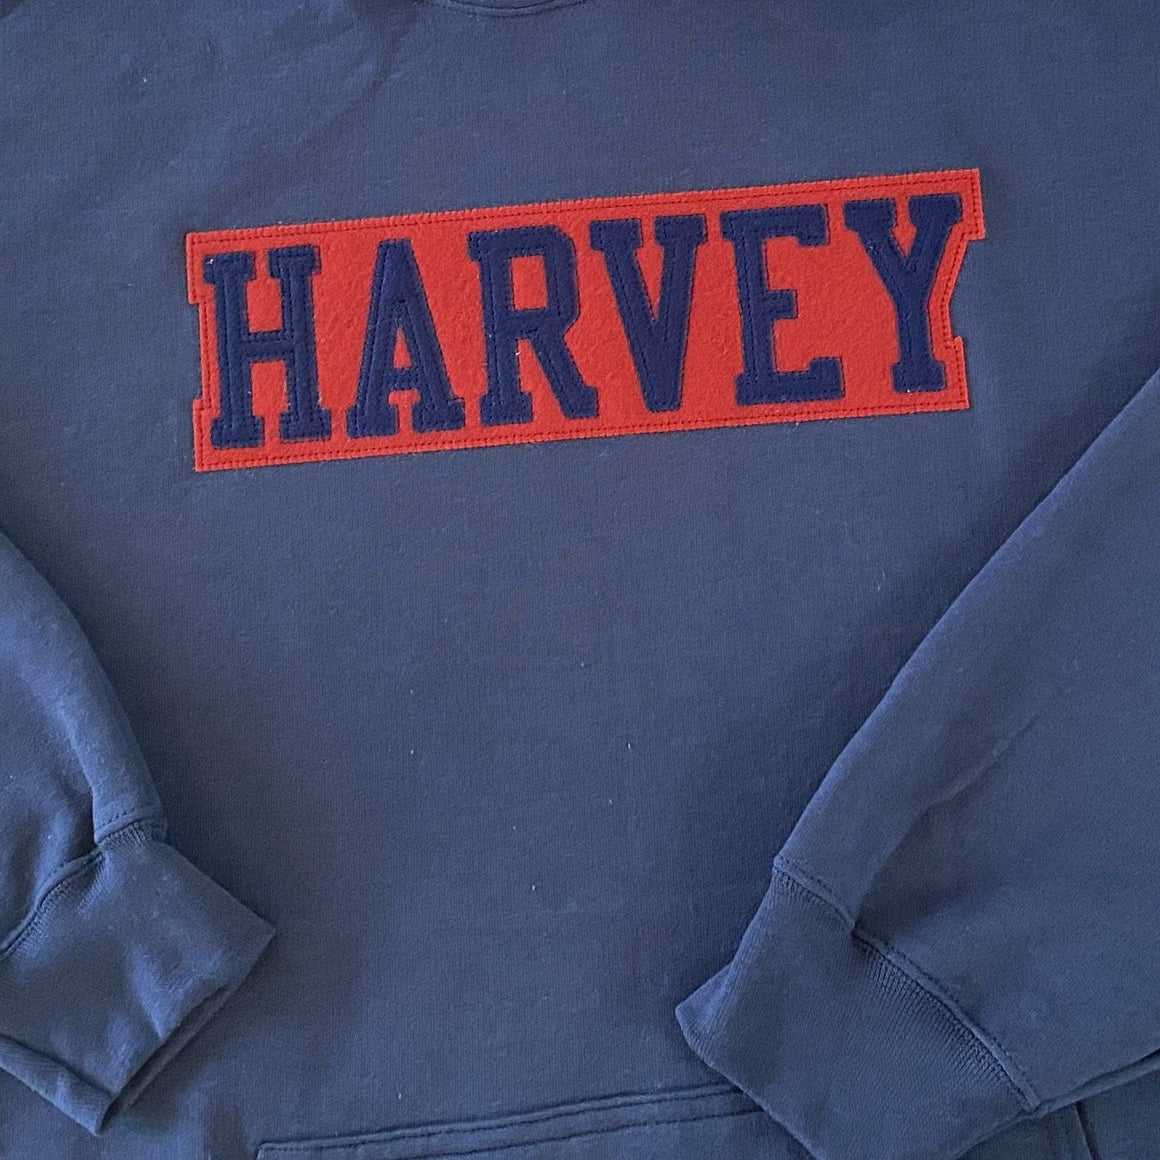 Harvey School Vintage Appliqué Crewneck Sweatshirt 2